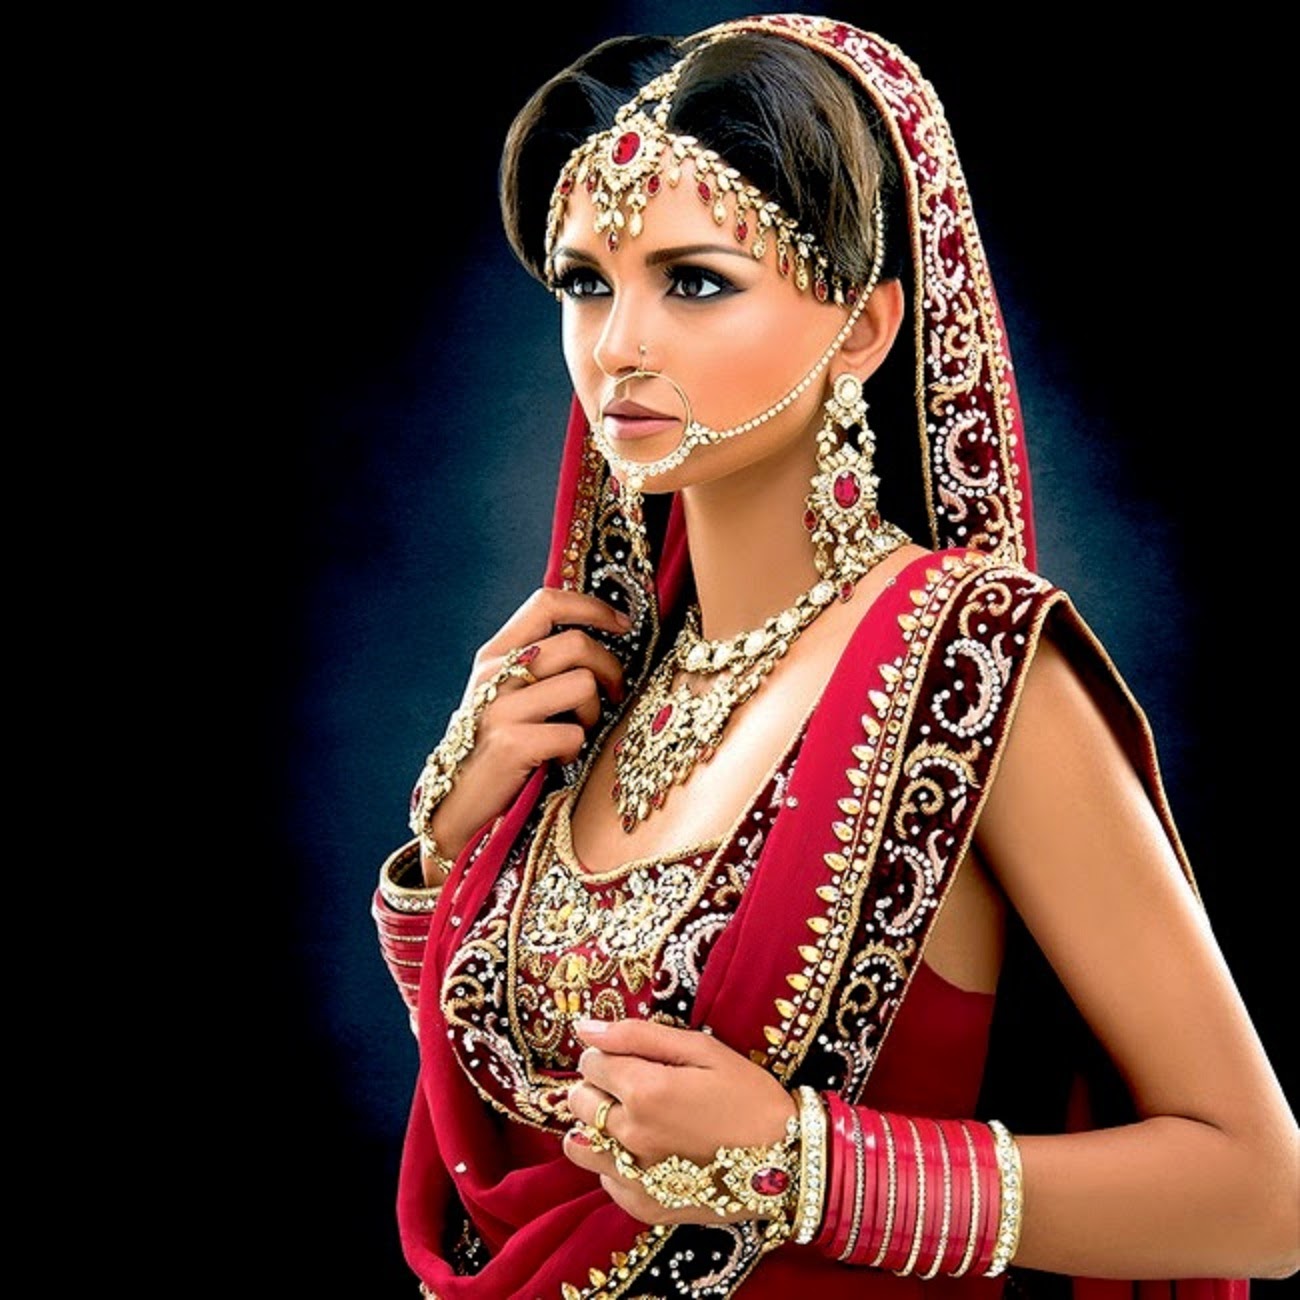 téléchargement de fond d'écran de mariée,la mariée,beauté,rose,sari,tradition